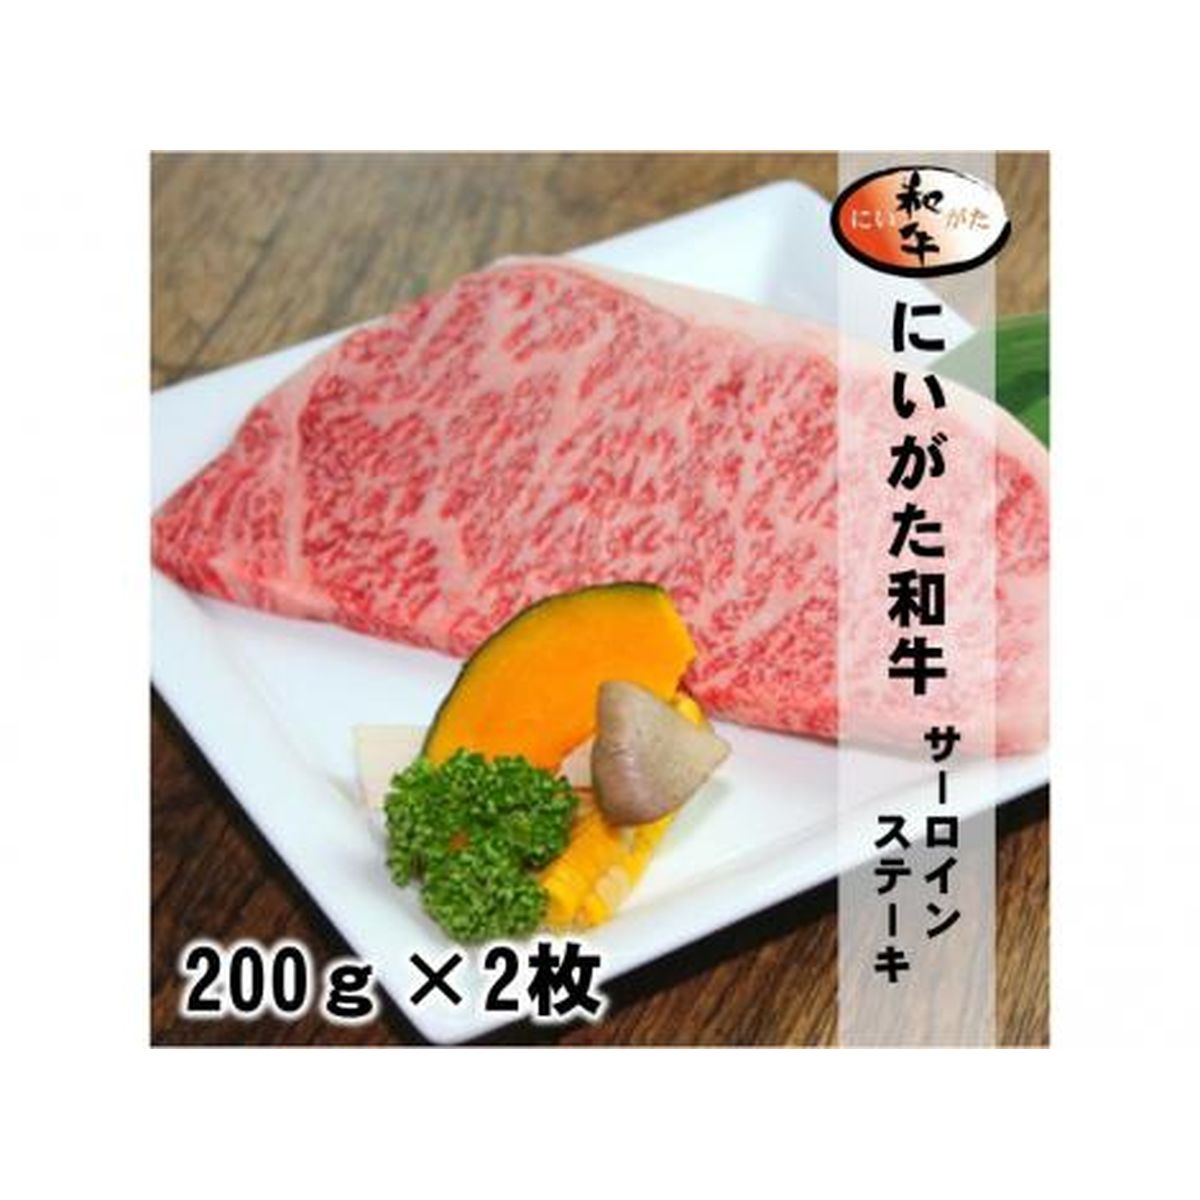 にいがた和牛サーロインステーキ/200g×2